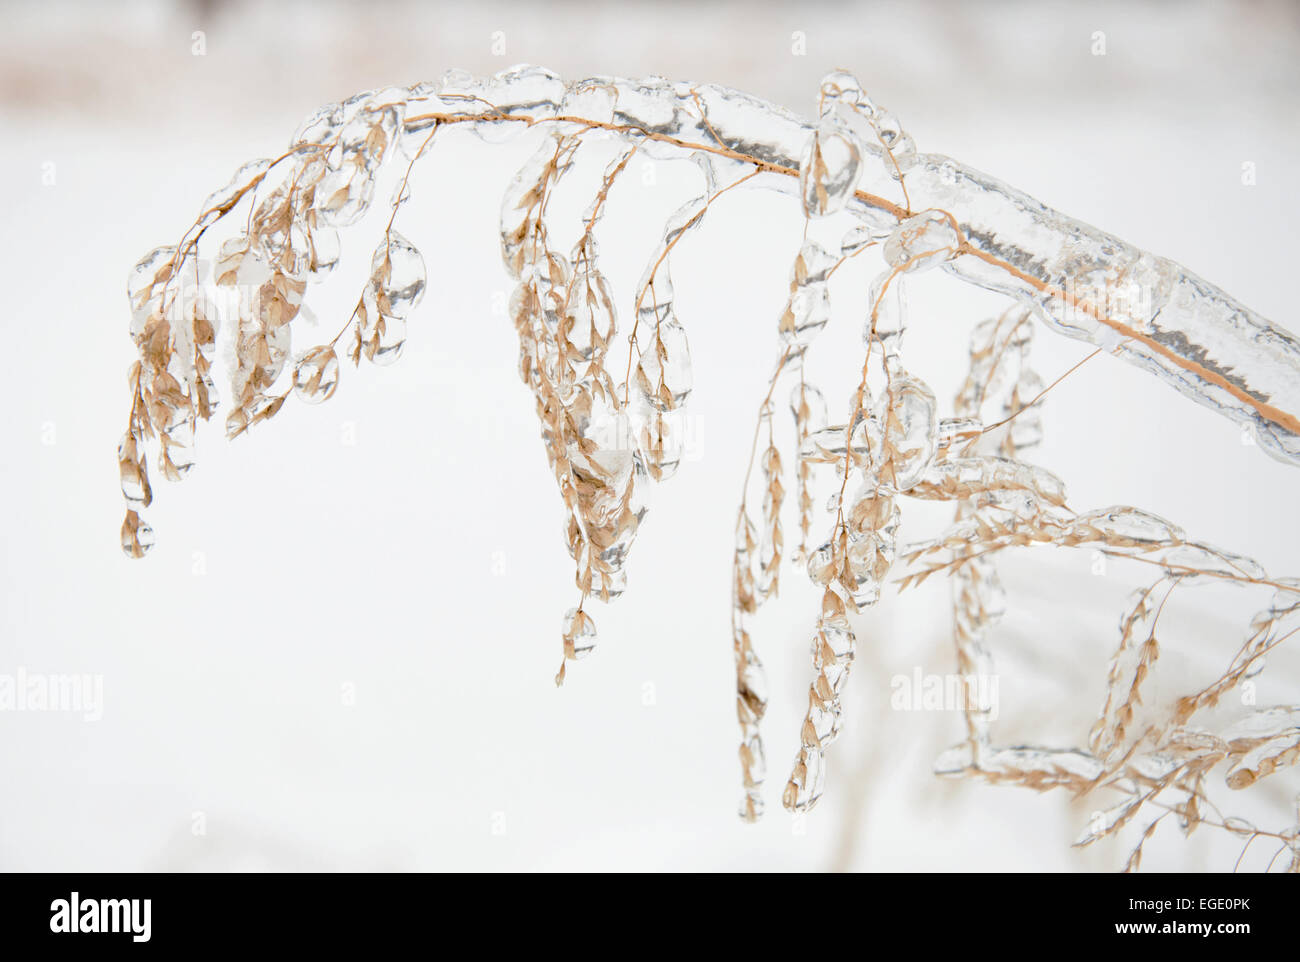 L'avoine sauvage recouverte d'une épaisse couche de glace après une tempête de glace Banque D'Images